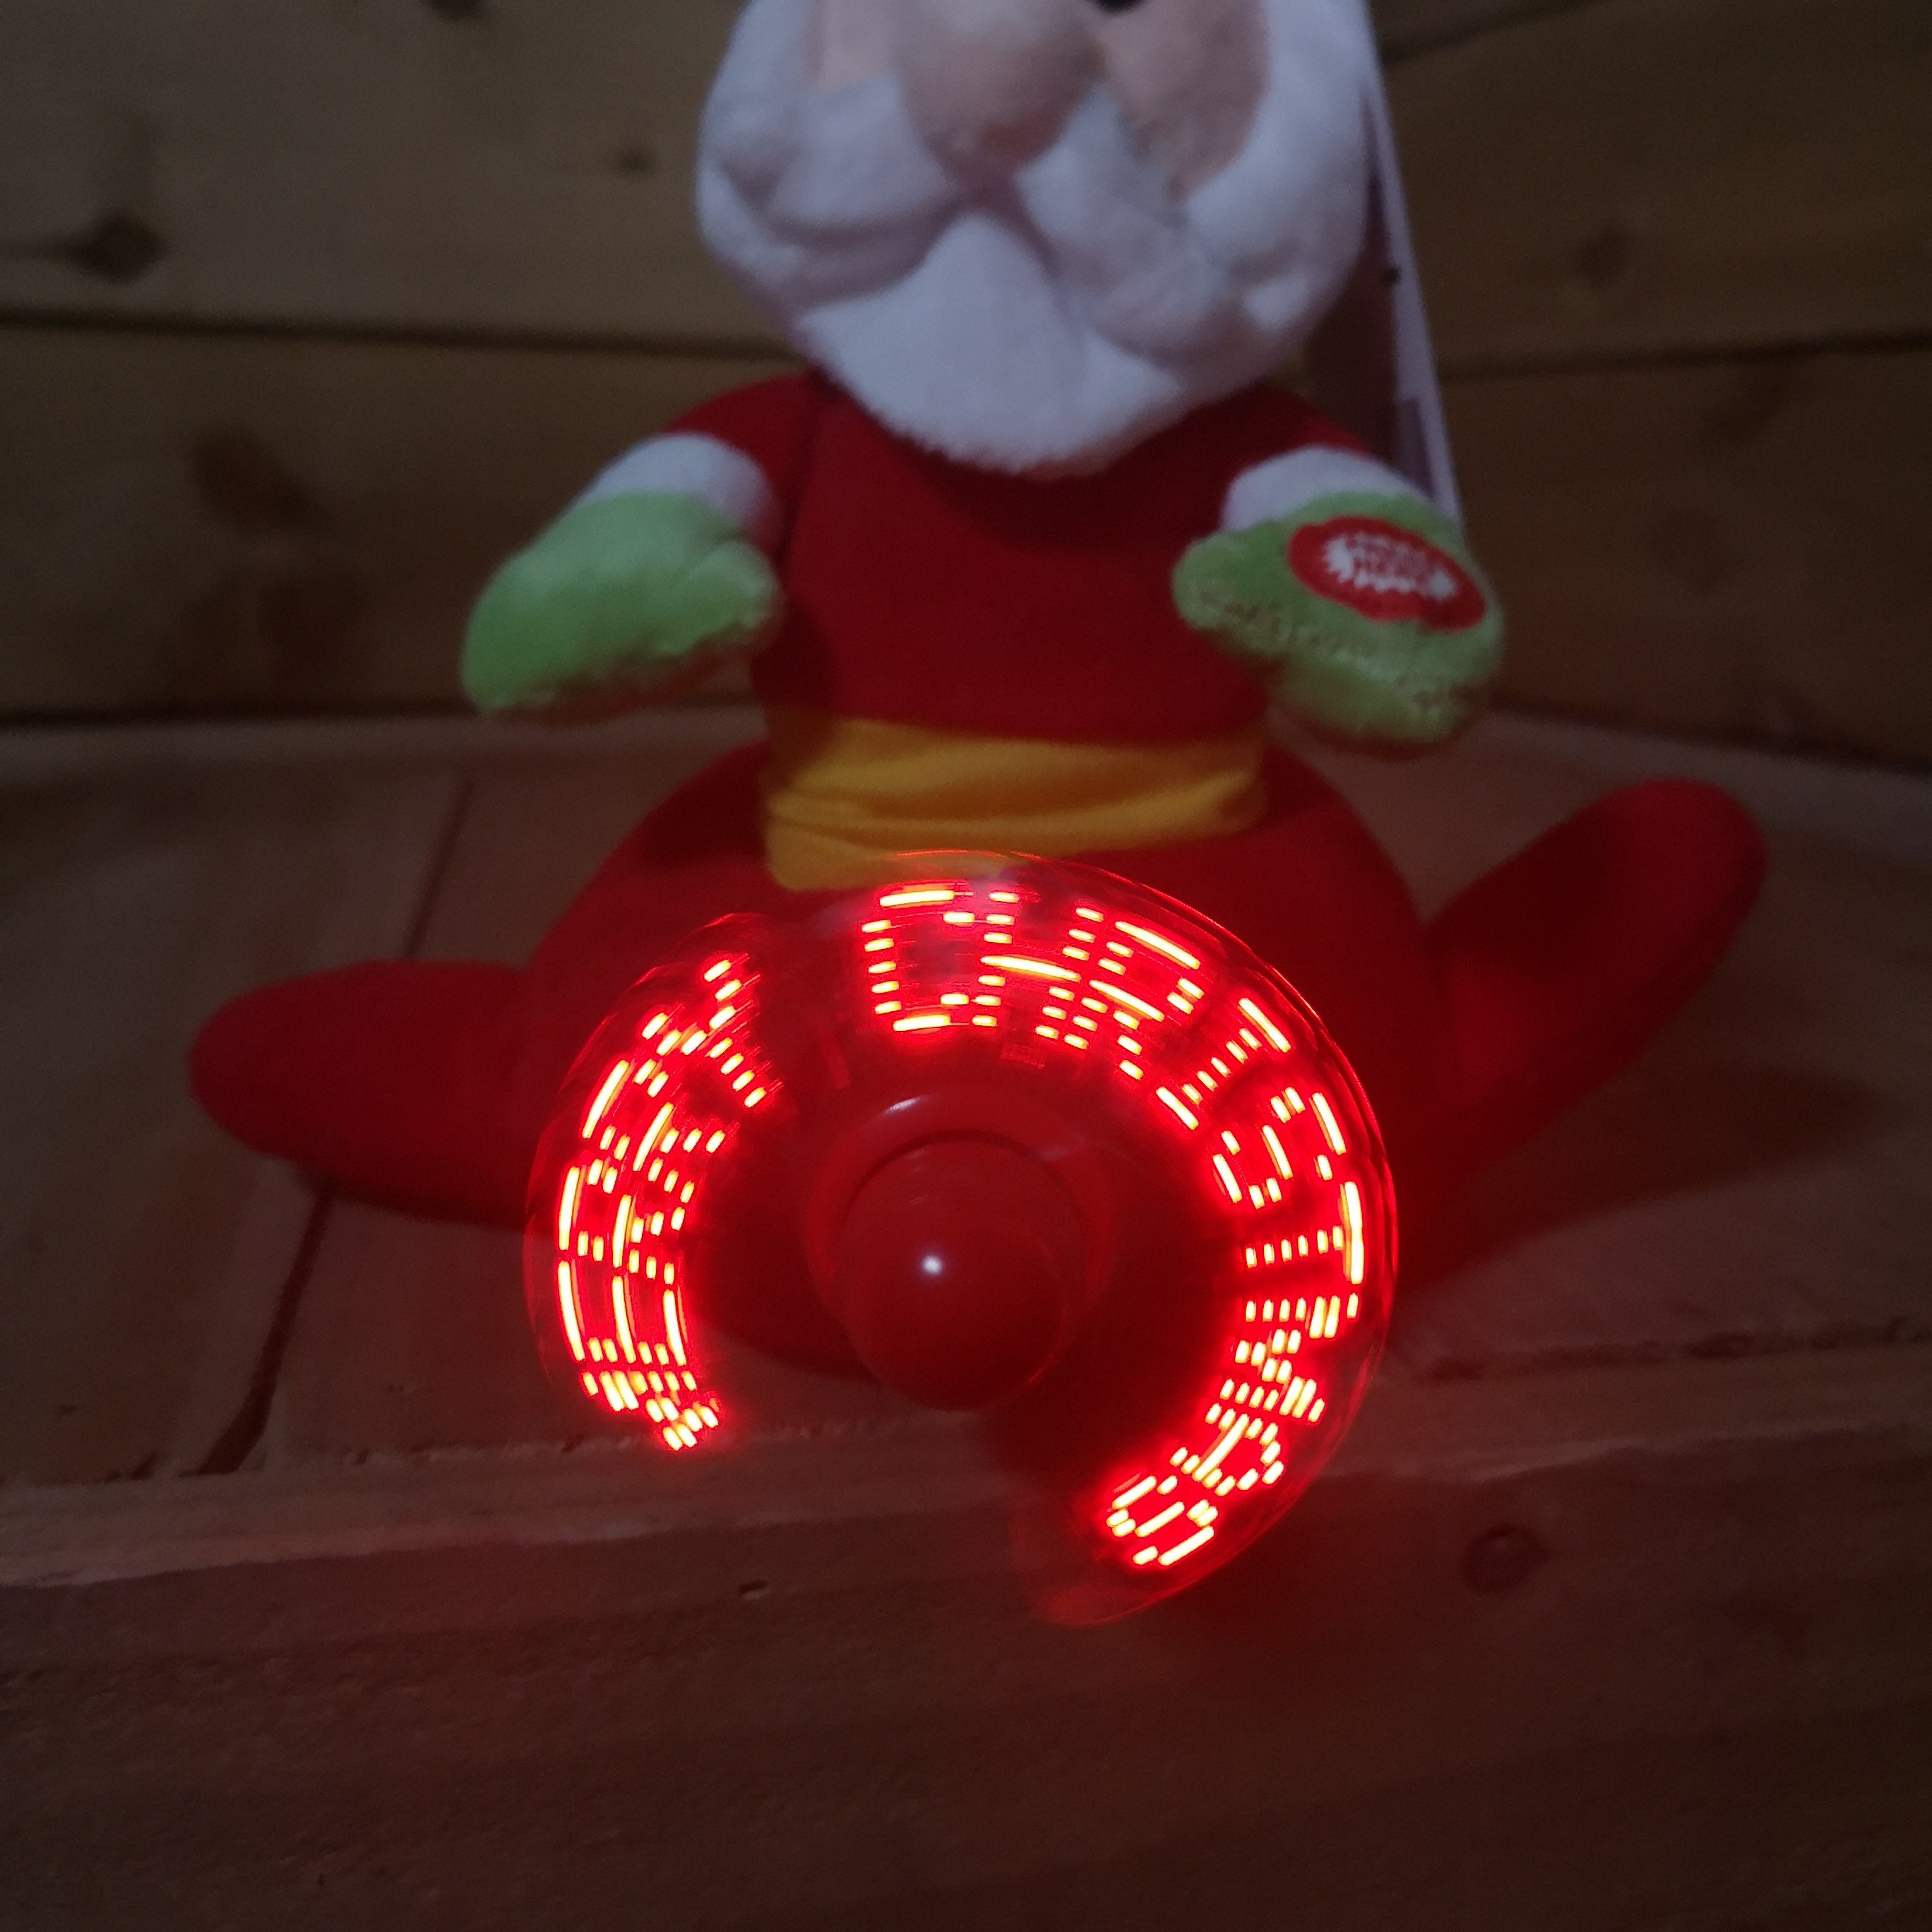 Festive 22cm Christmas Musical Spinning 'MERRY CHRISTMAS' Propeller Santa